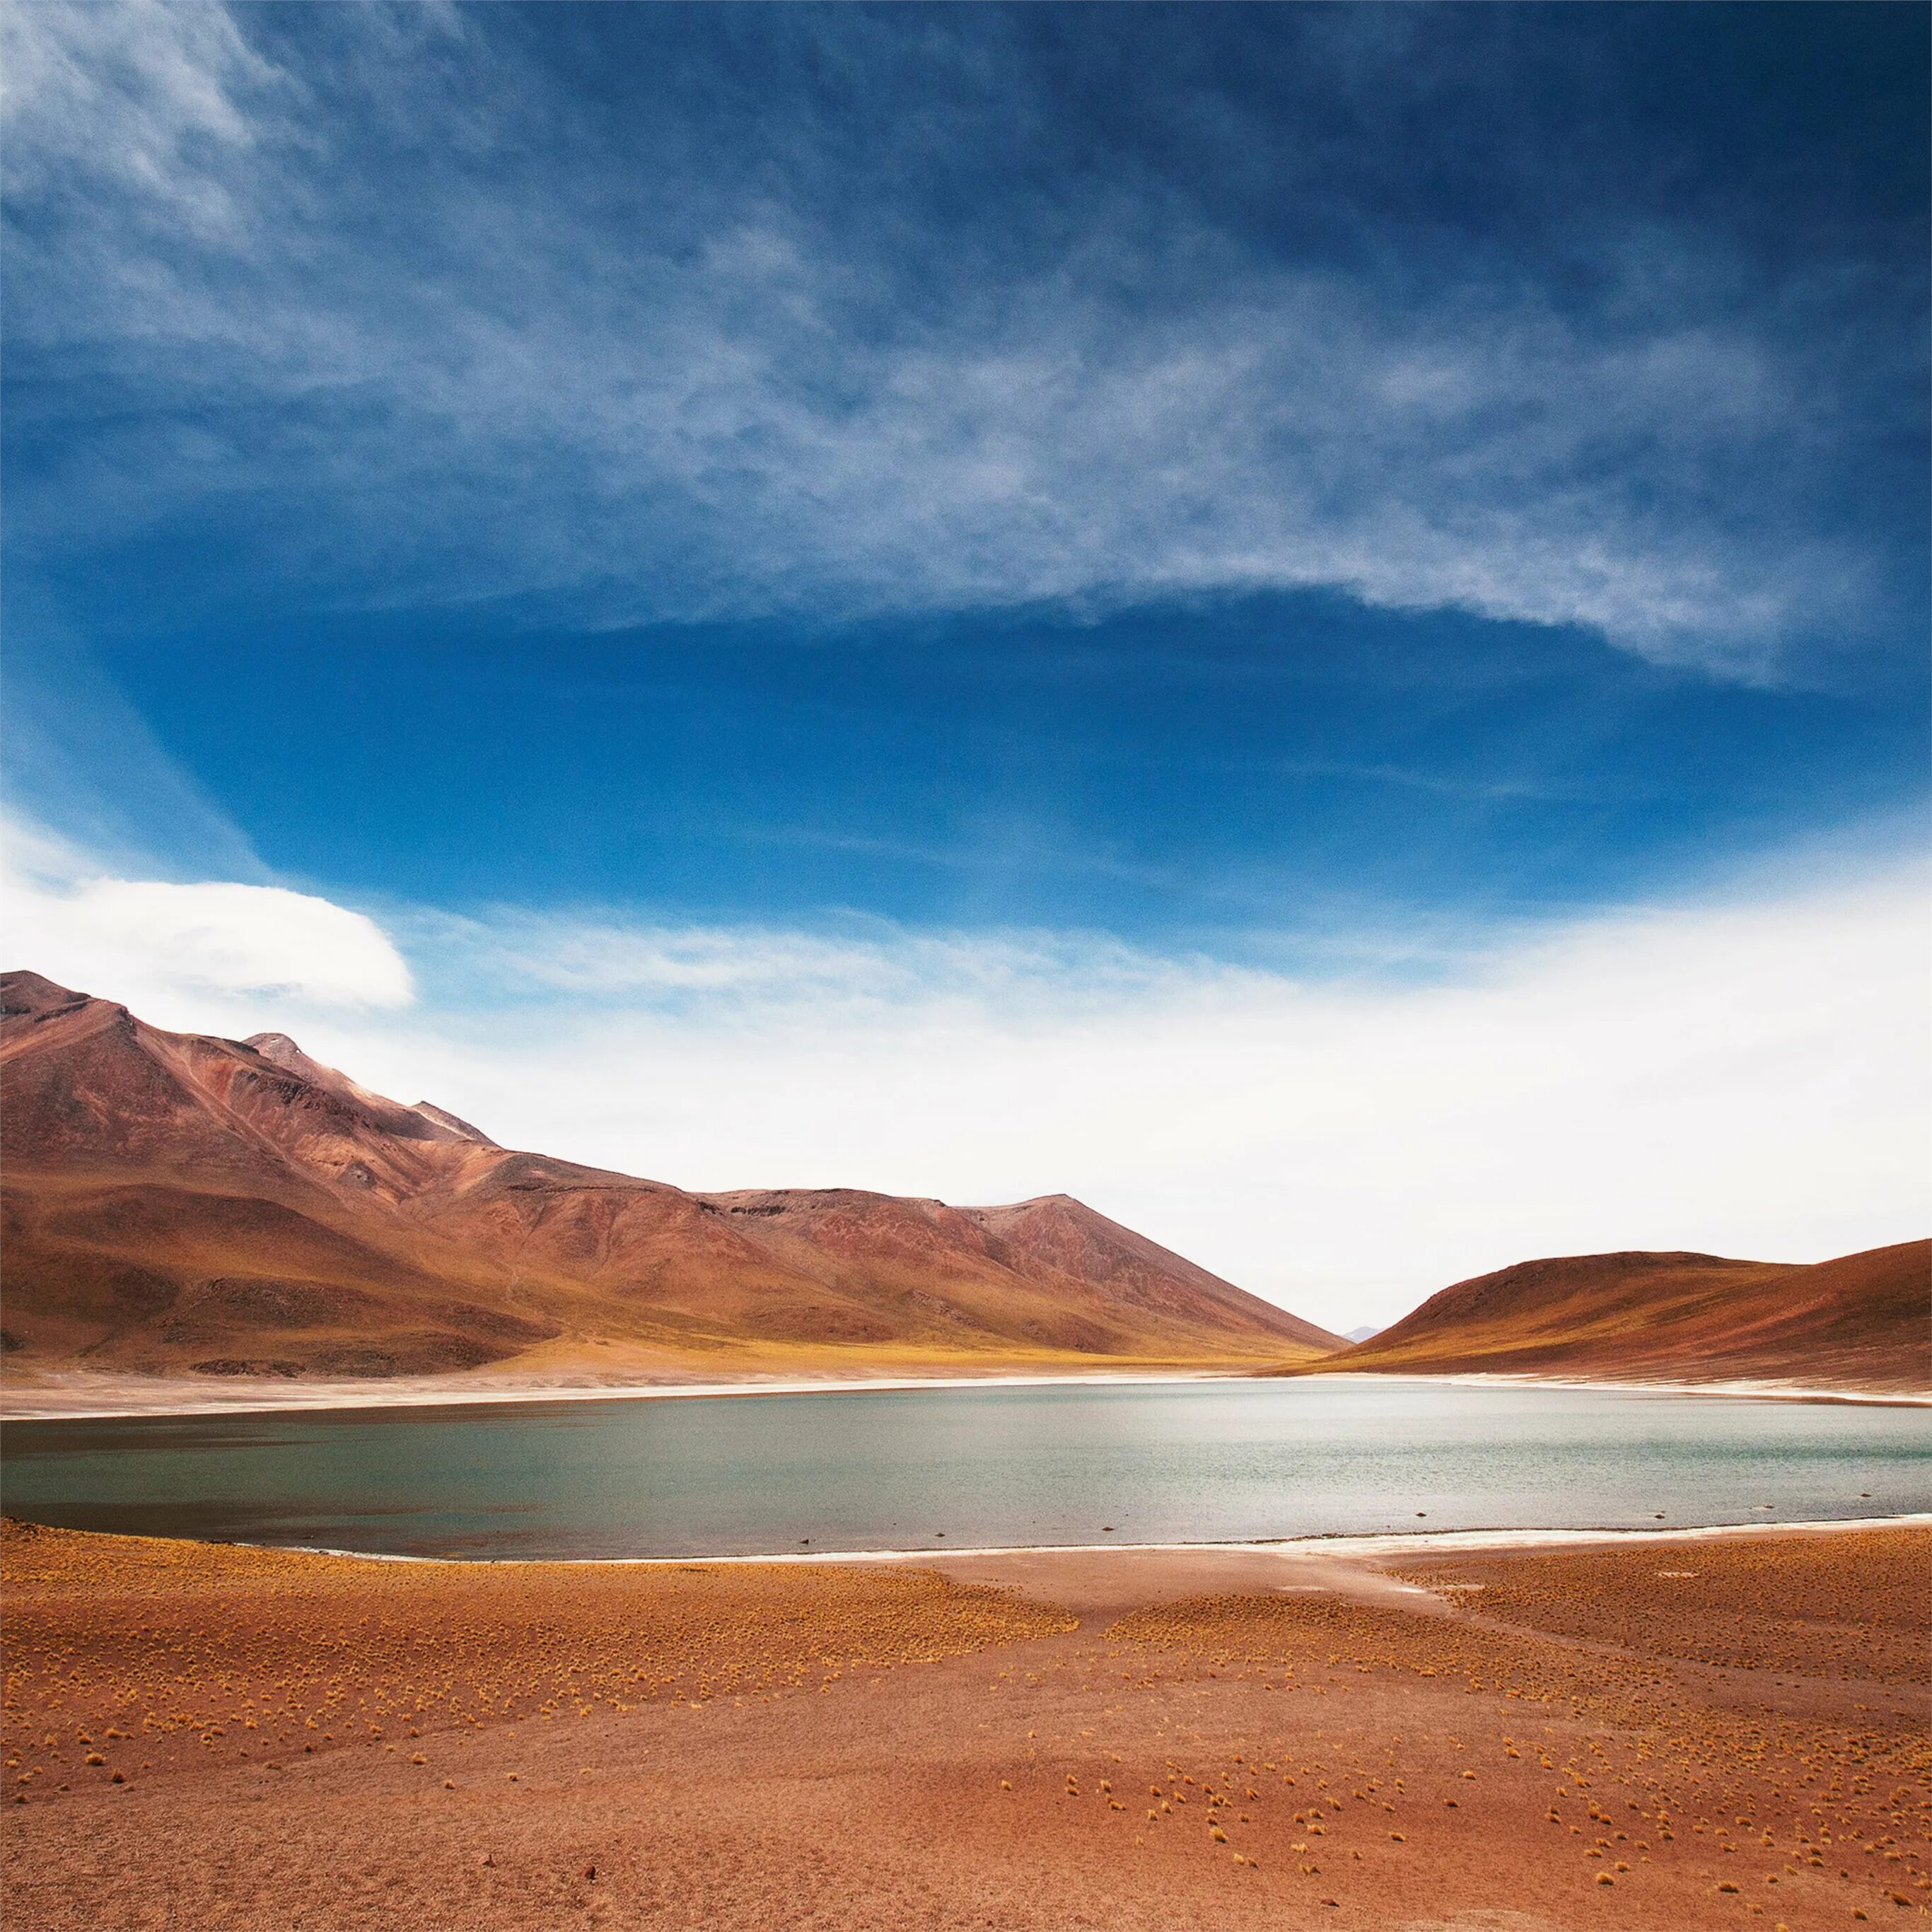 Atacama озеро. Южная Америка пустыня Атакама. Береговая пустыня Атакама. Цветущая пустыня Атакама. Образование пустыни атакама на западном побережье